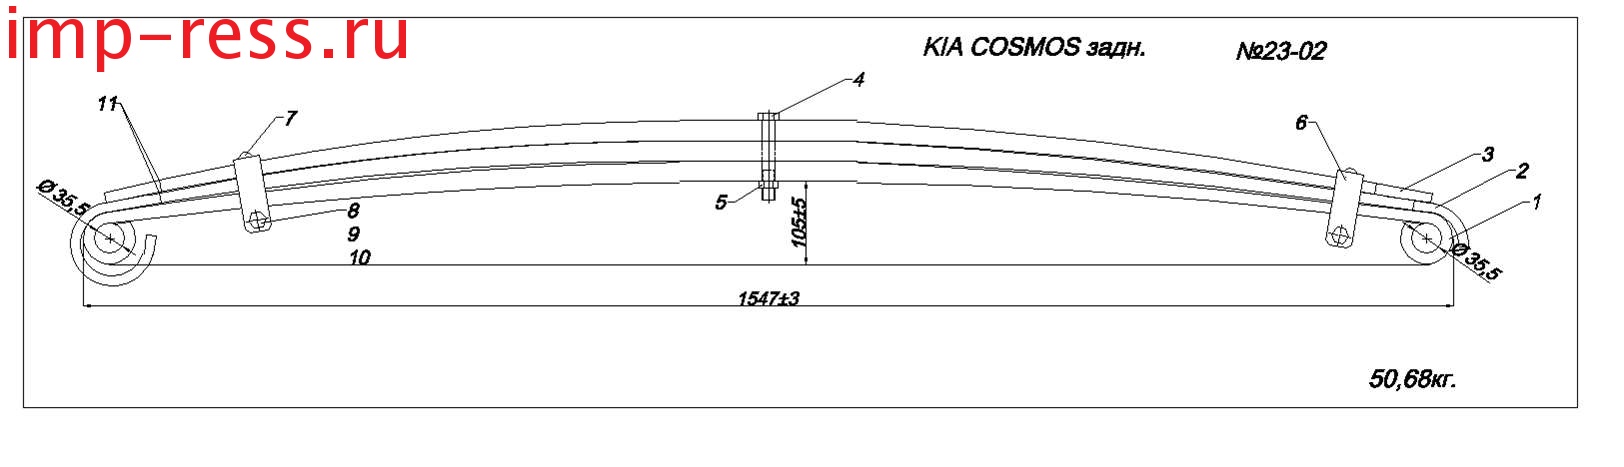 KIA COSMOS рессора задняя (IR 23-02)
По согласованию с Заказчиком возможно изготовление рессоры из полосы сечением 80*22/12 или 80*25/12,